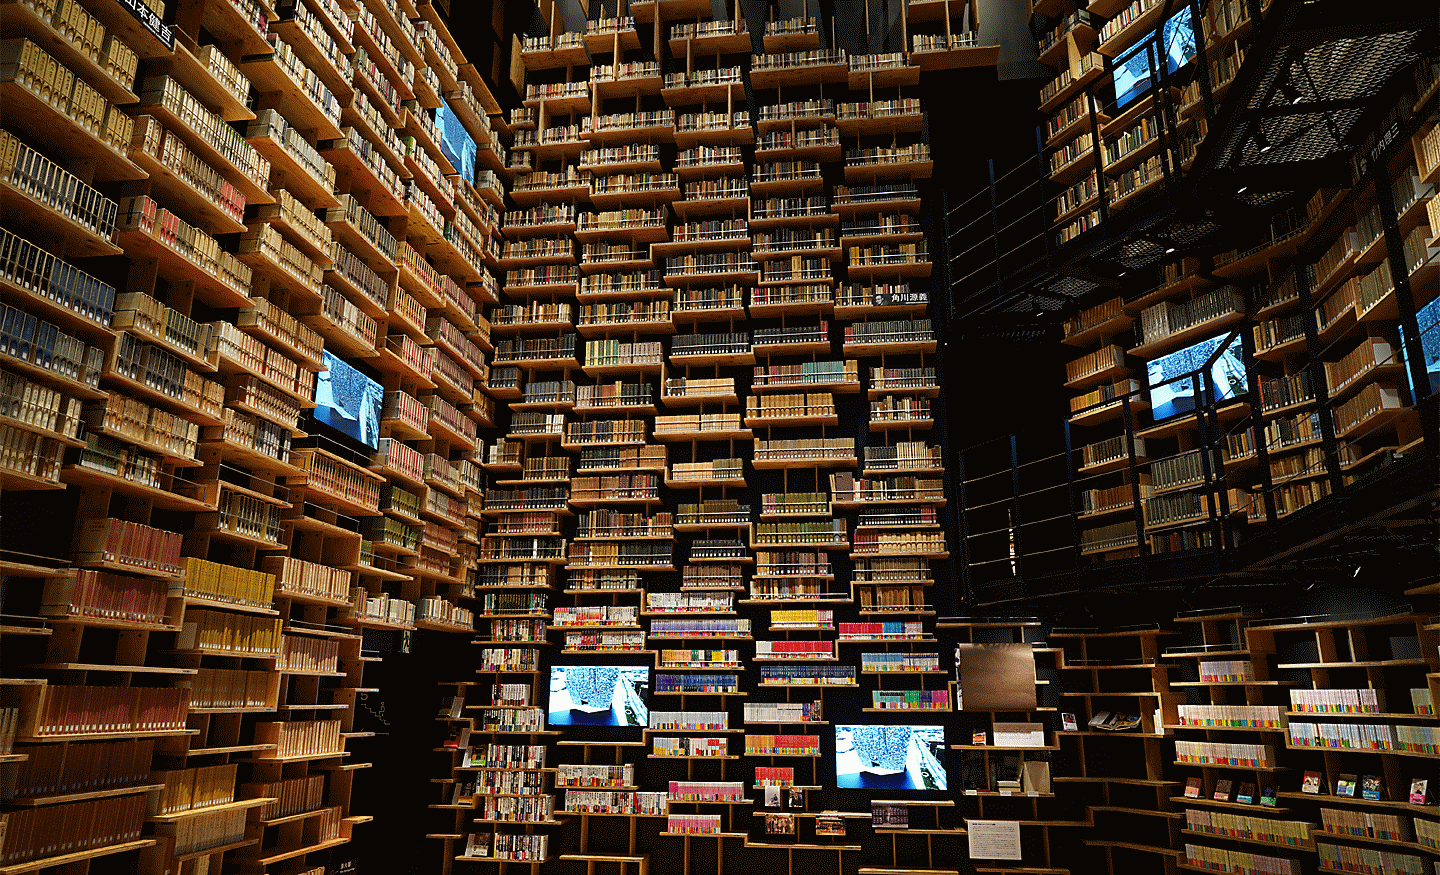 Záber interiéru knižnice vytvorený týmto objektívom s vysokým rozlíšením v každom rohu snímky